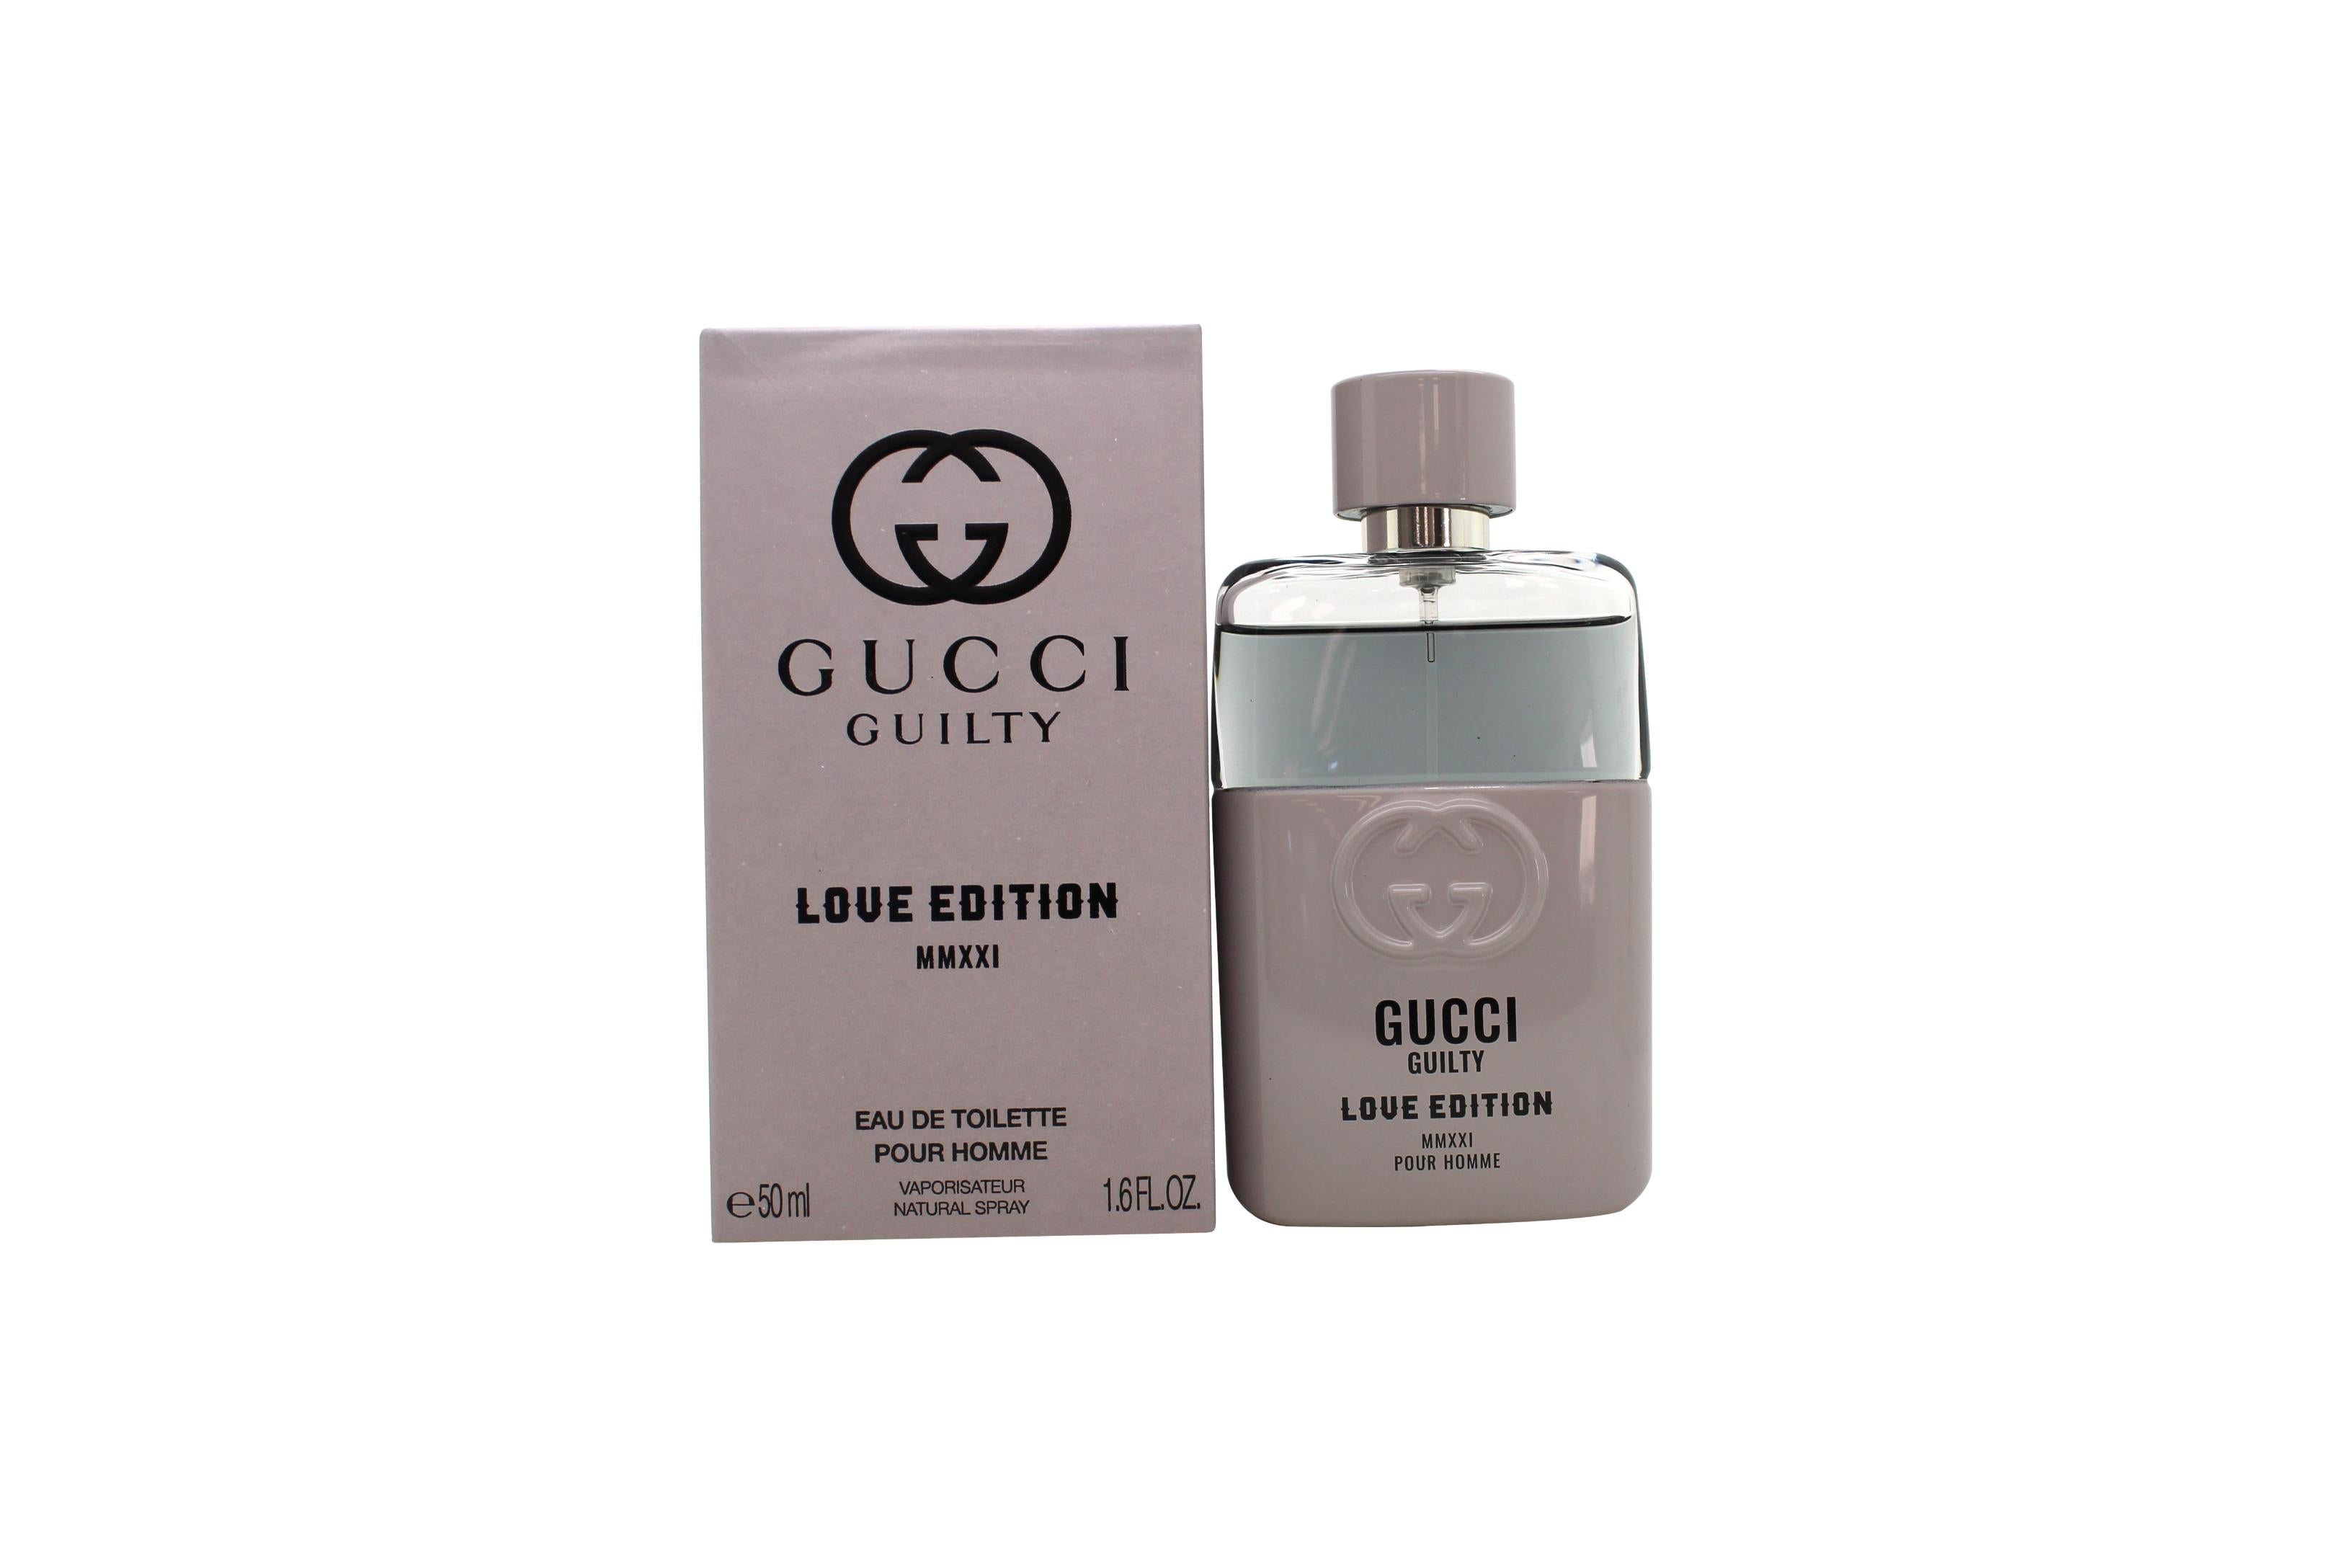 View Gucci Guilty Love Edition MMXXI Pour Homme Eau de Toilette 50ml Sprej information